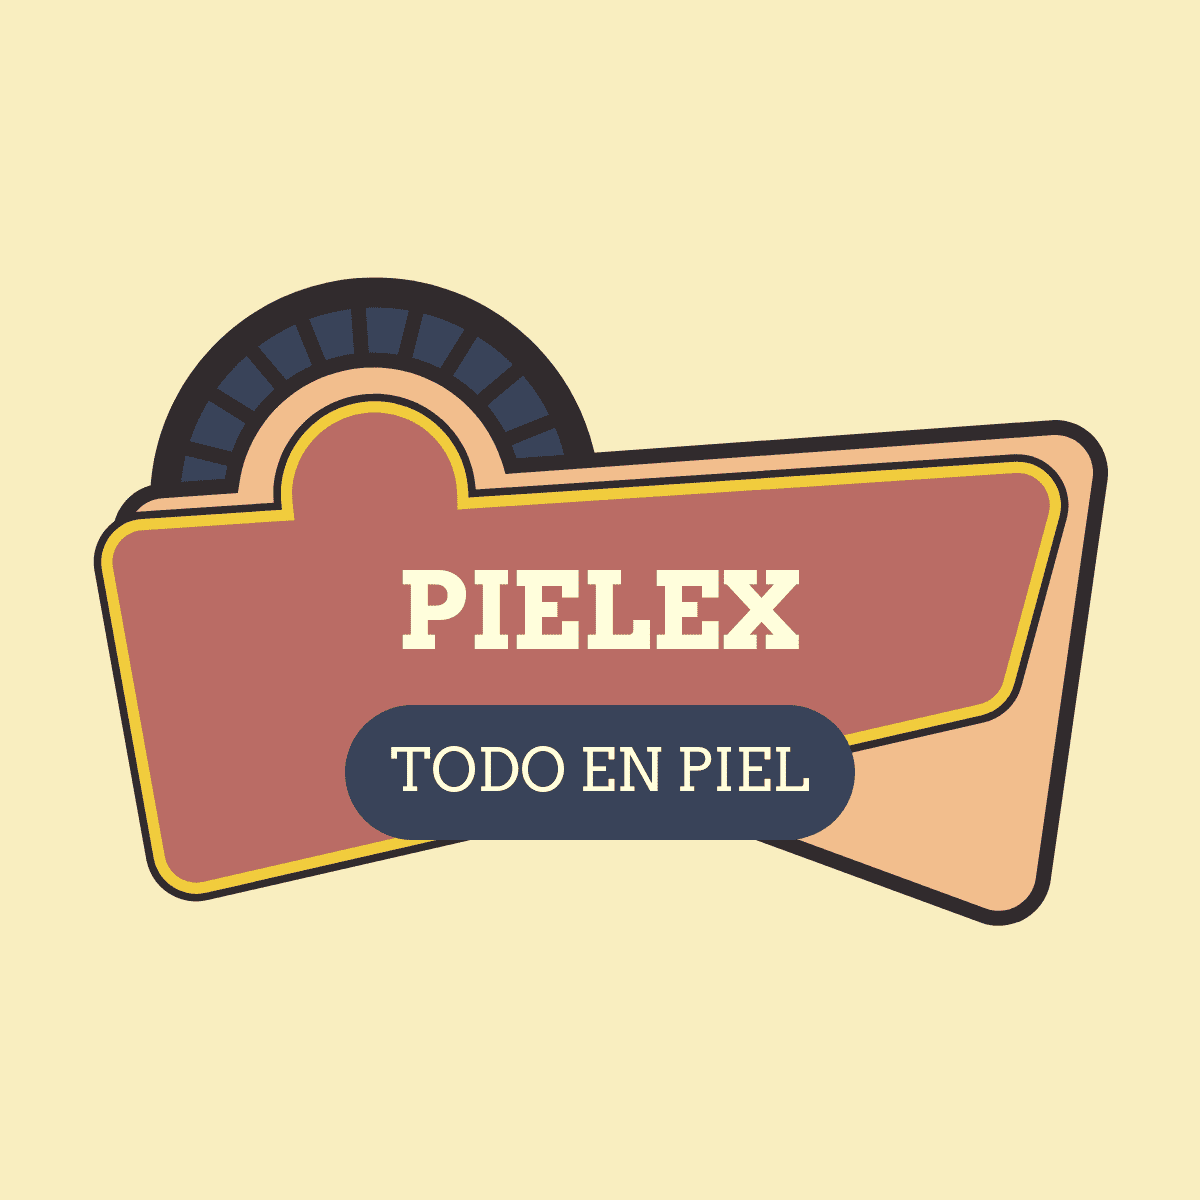 PIELEX